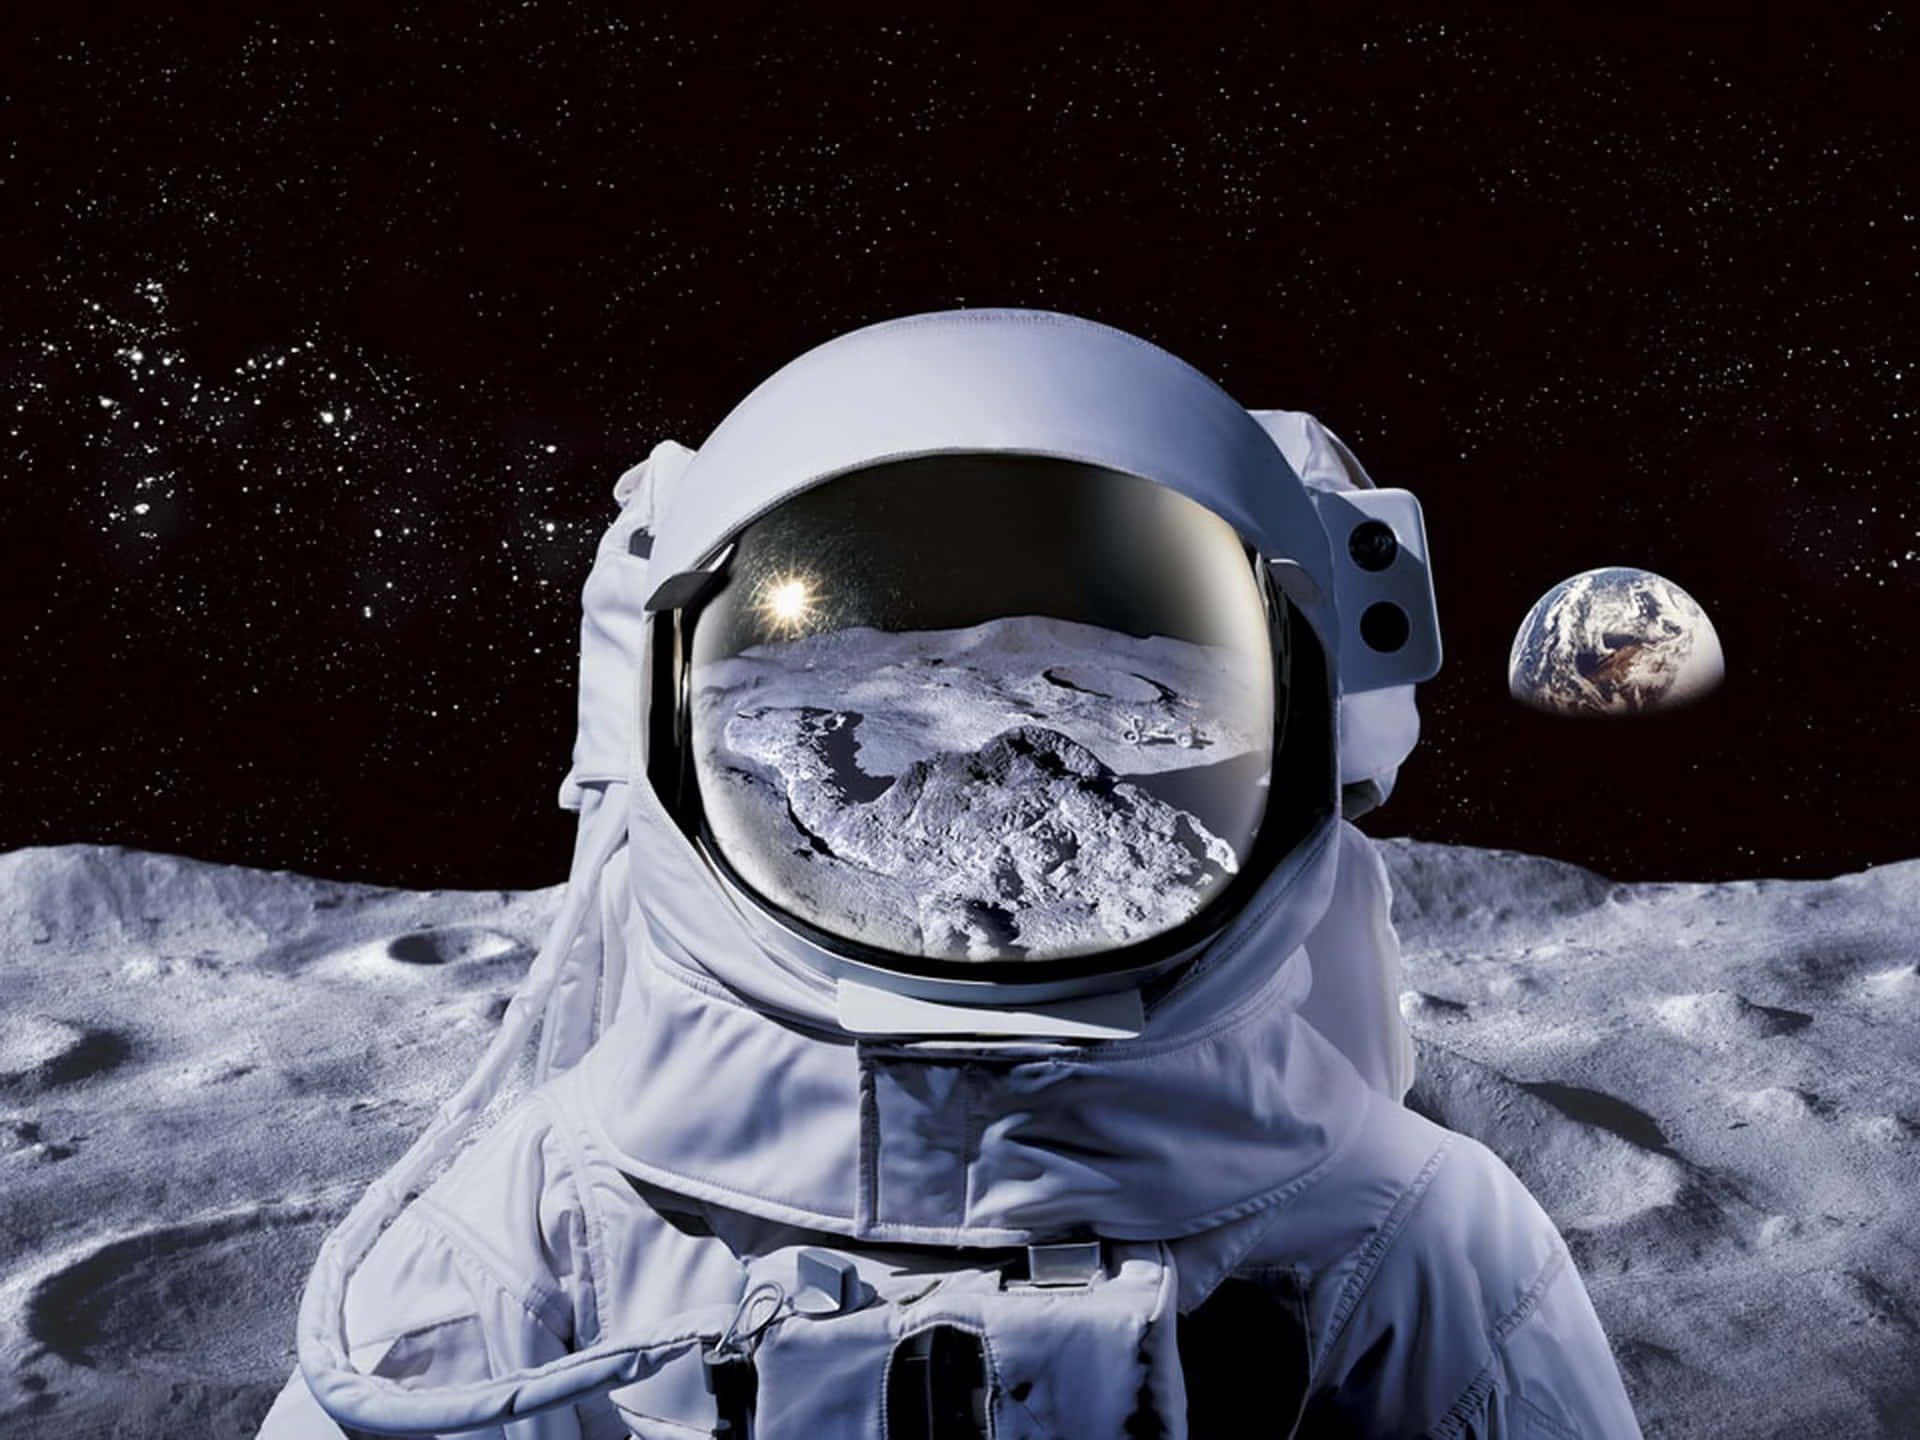 Einpsychedelischer Astronaut Erkundet Das Unbekannte. Wallpaper